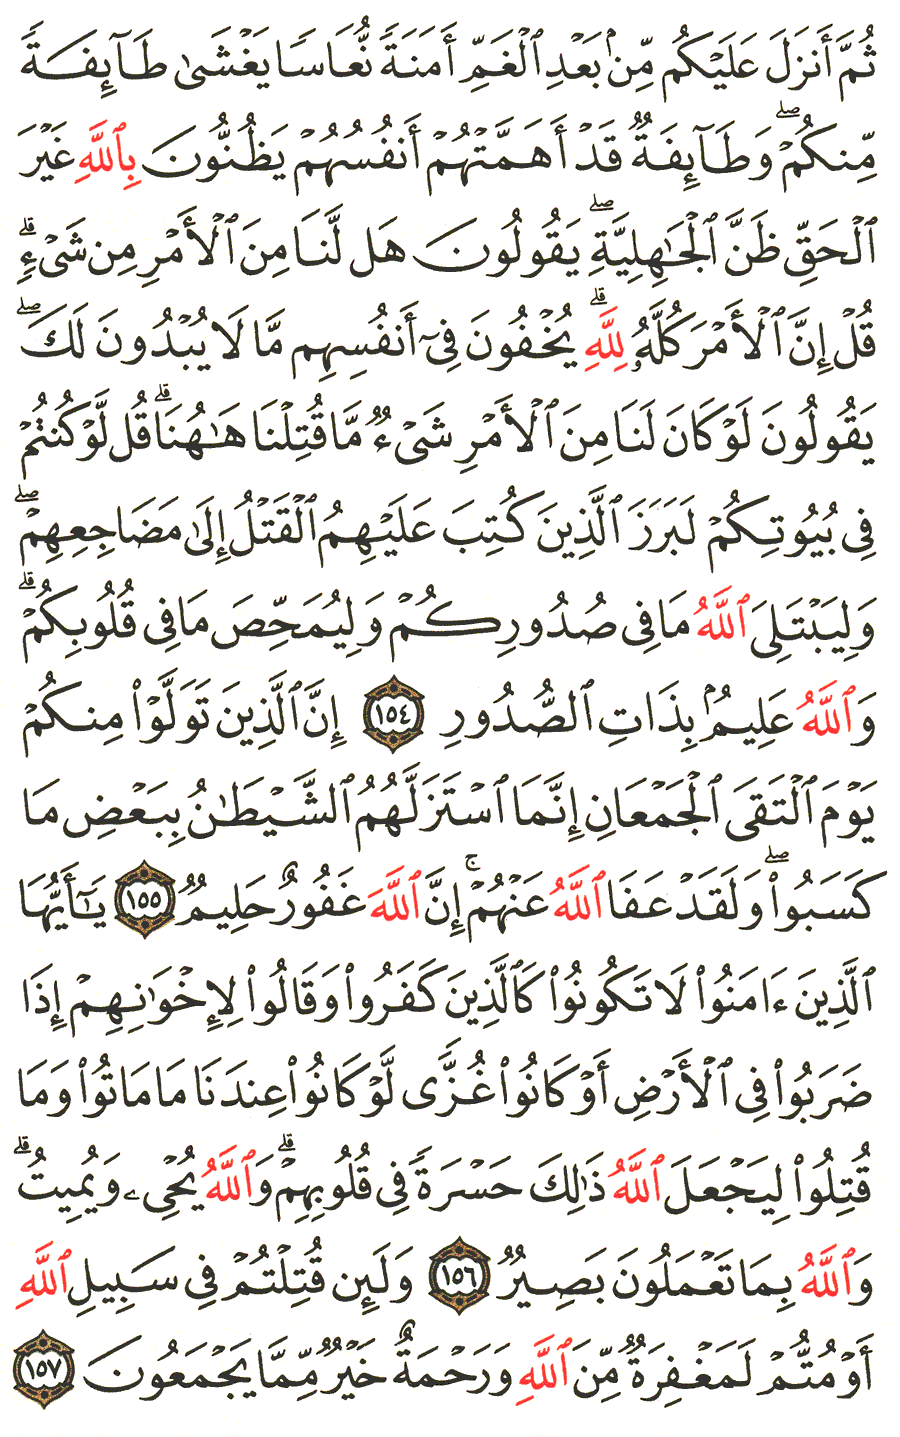 الصفحة 70 من القرآن الكريم